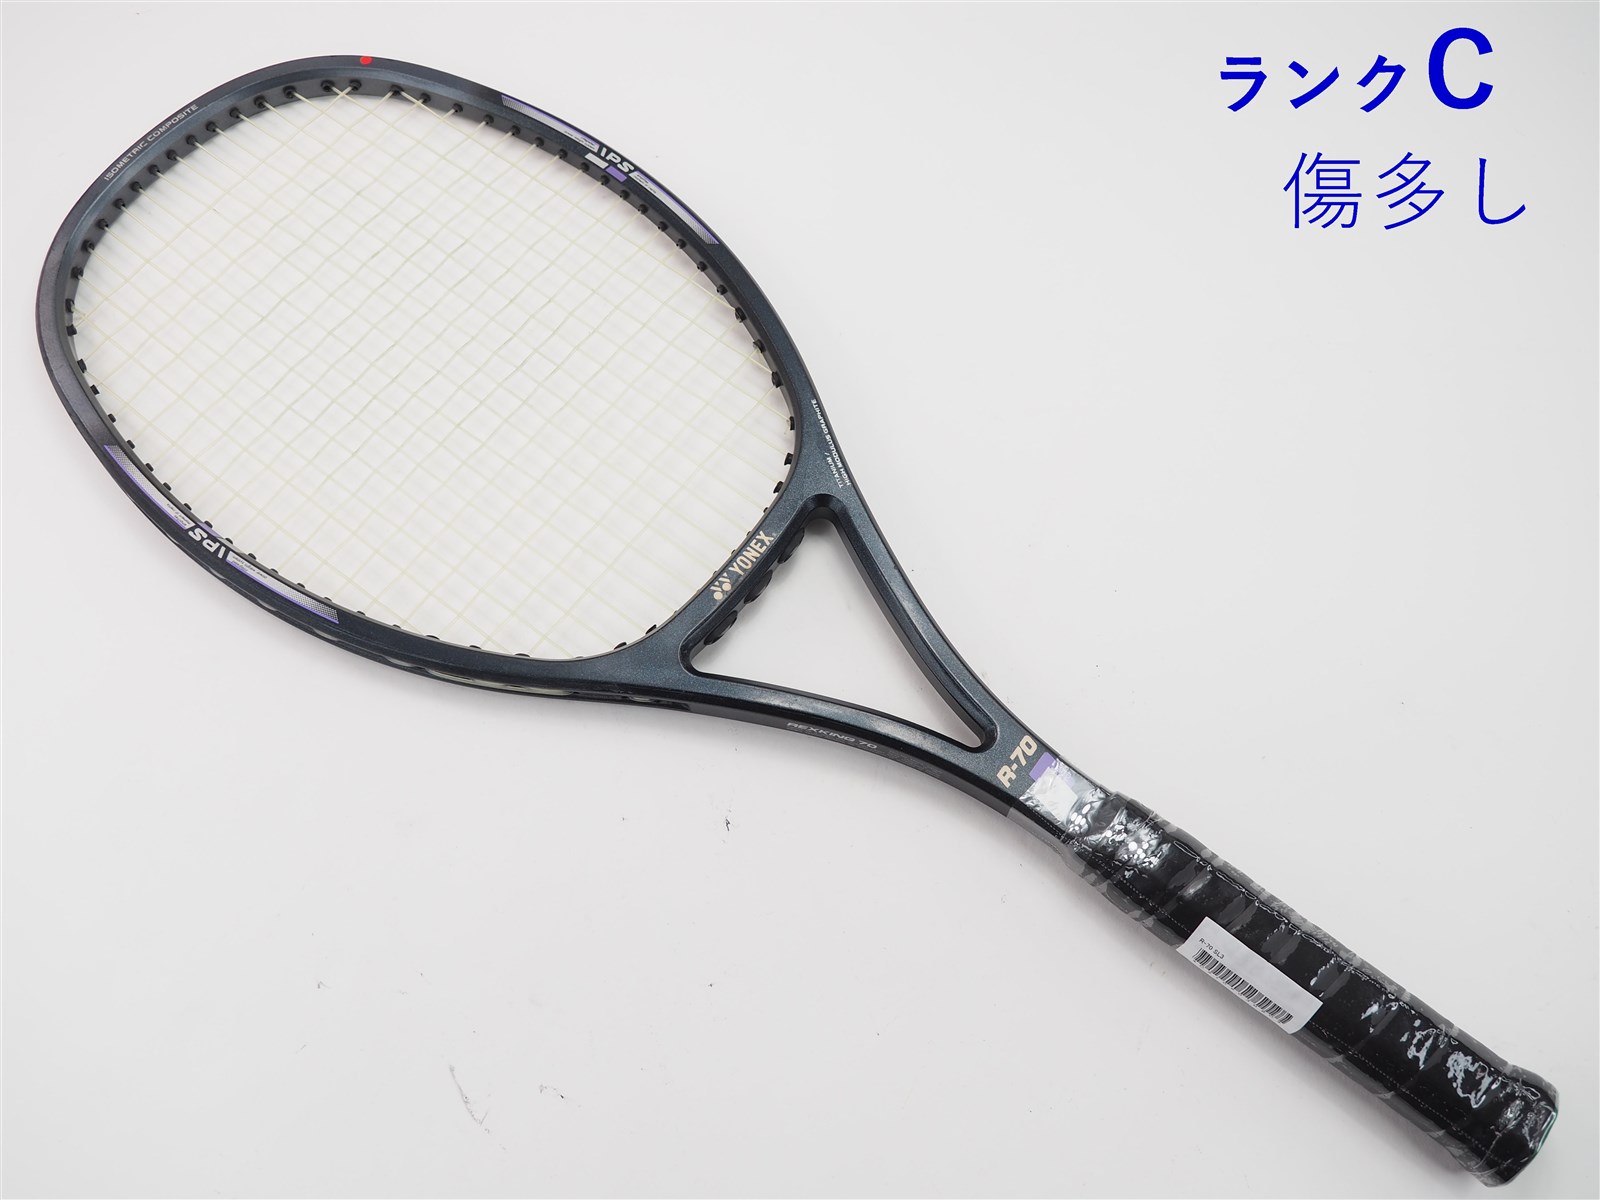 中古】ヨネックス レックスキング 70YONEX R-70(SL3)【中古 テニス 